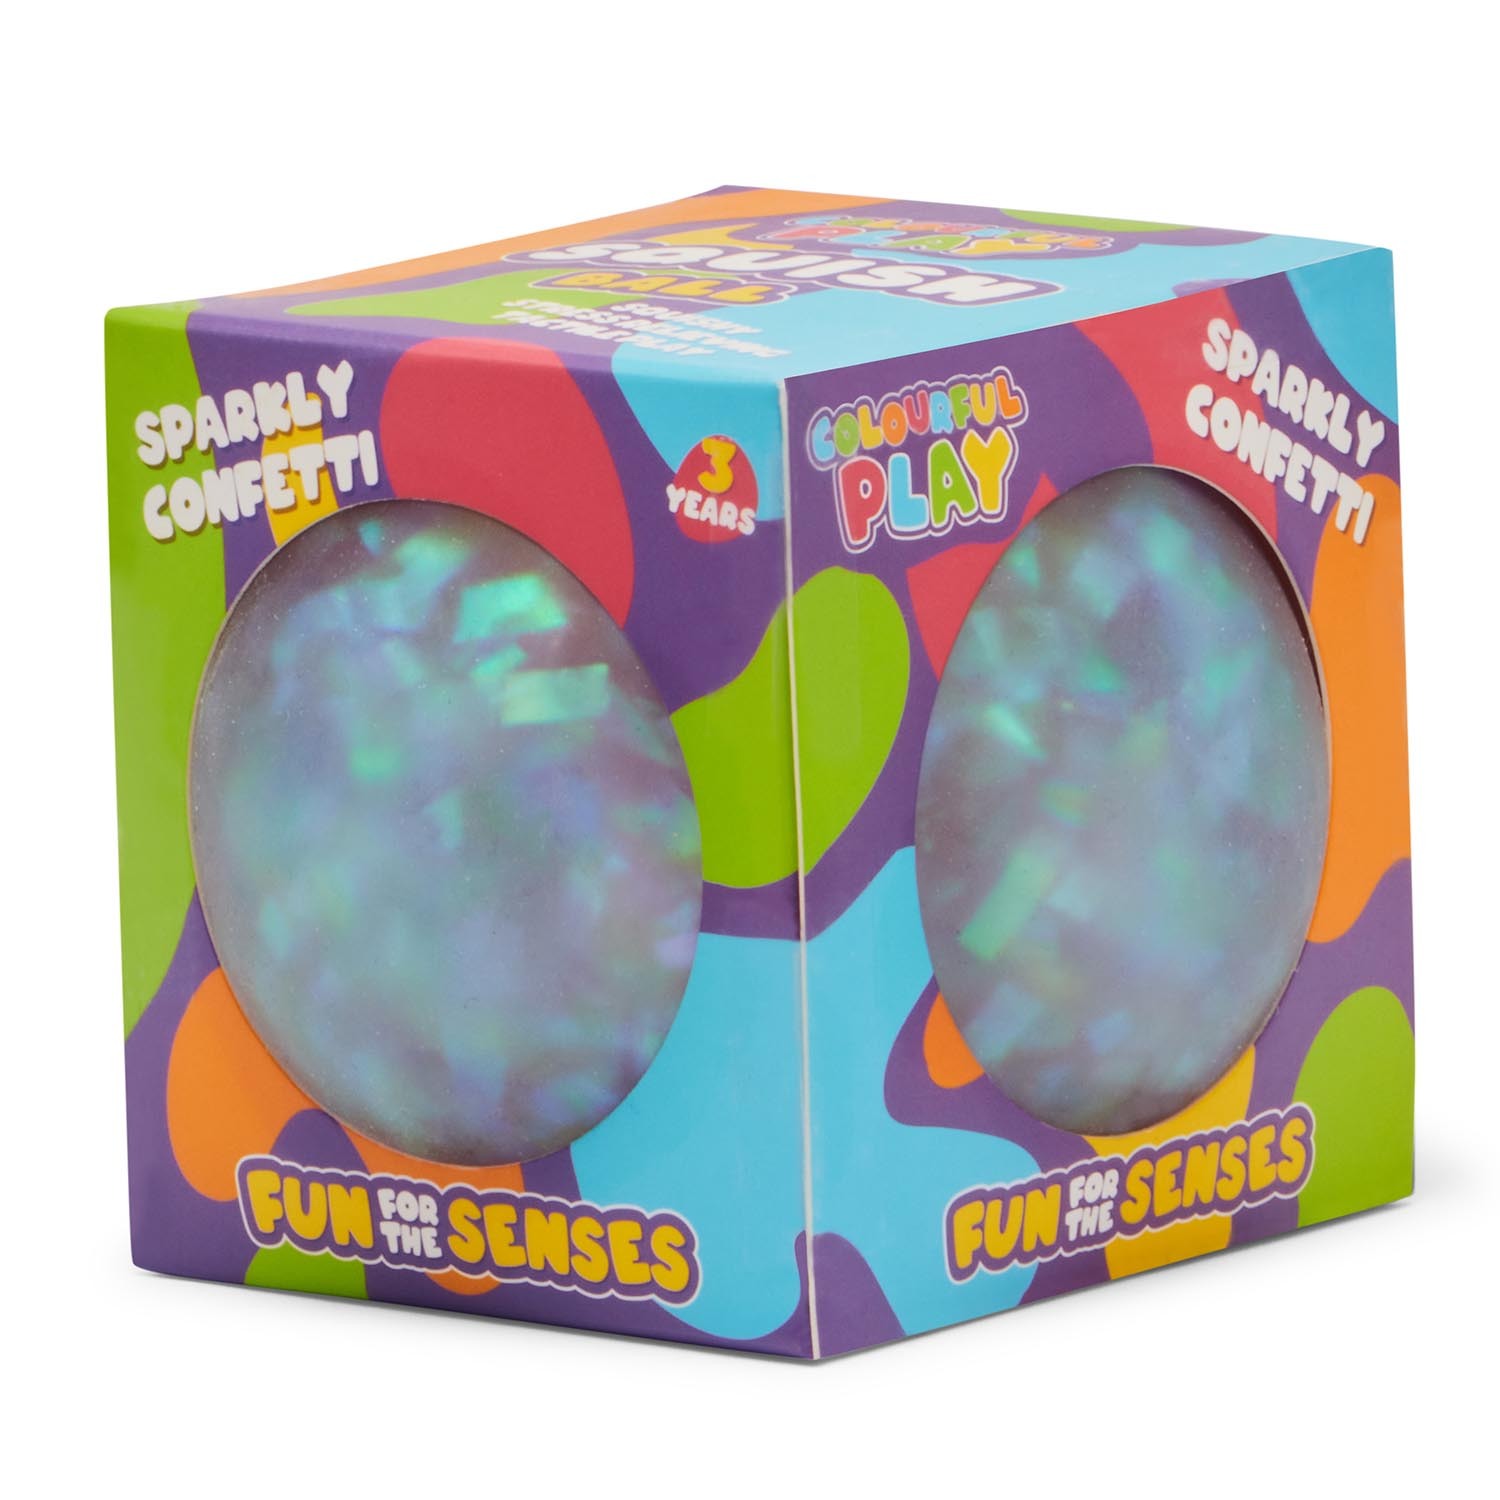 ToyMania Sparkly Confetti Squish Ball Image 3